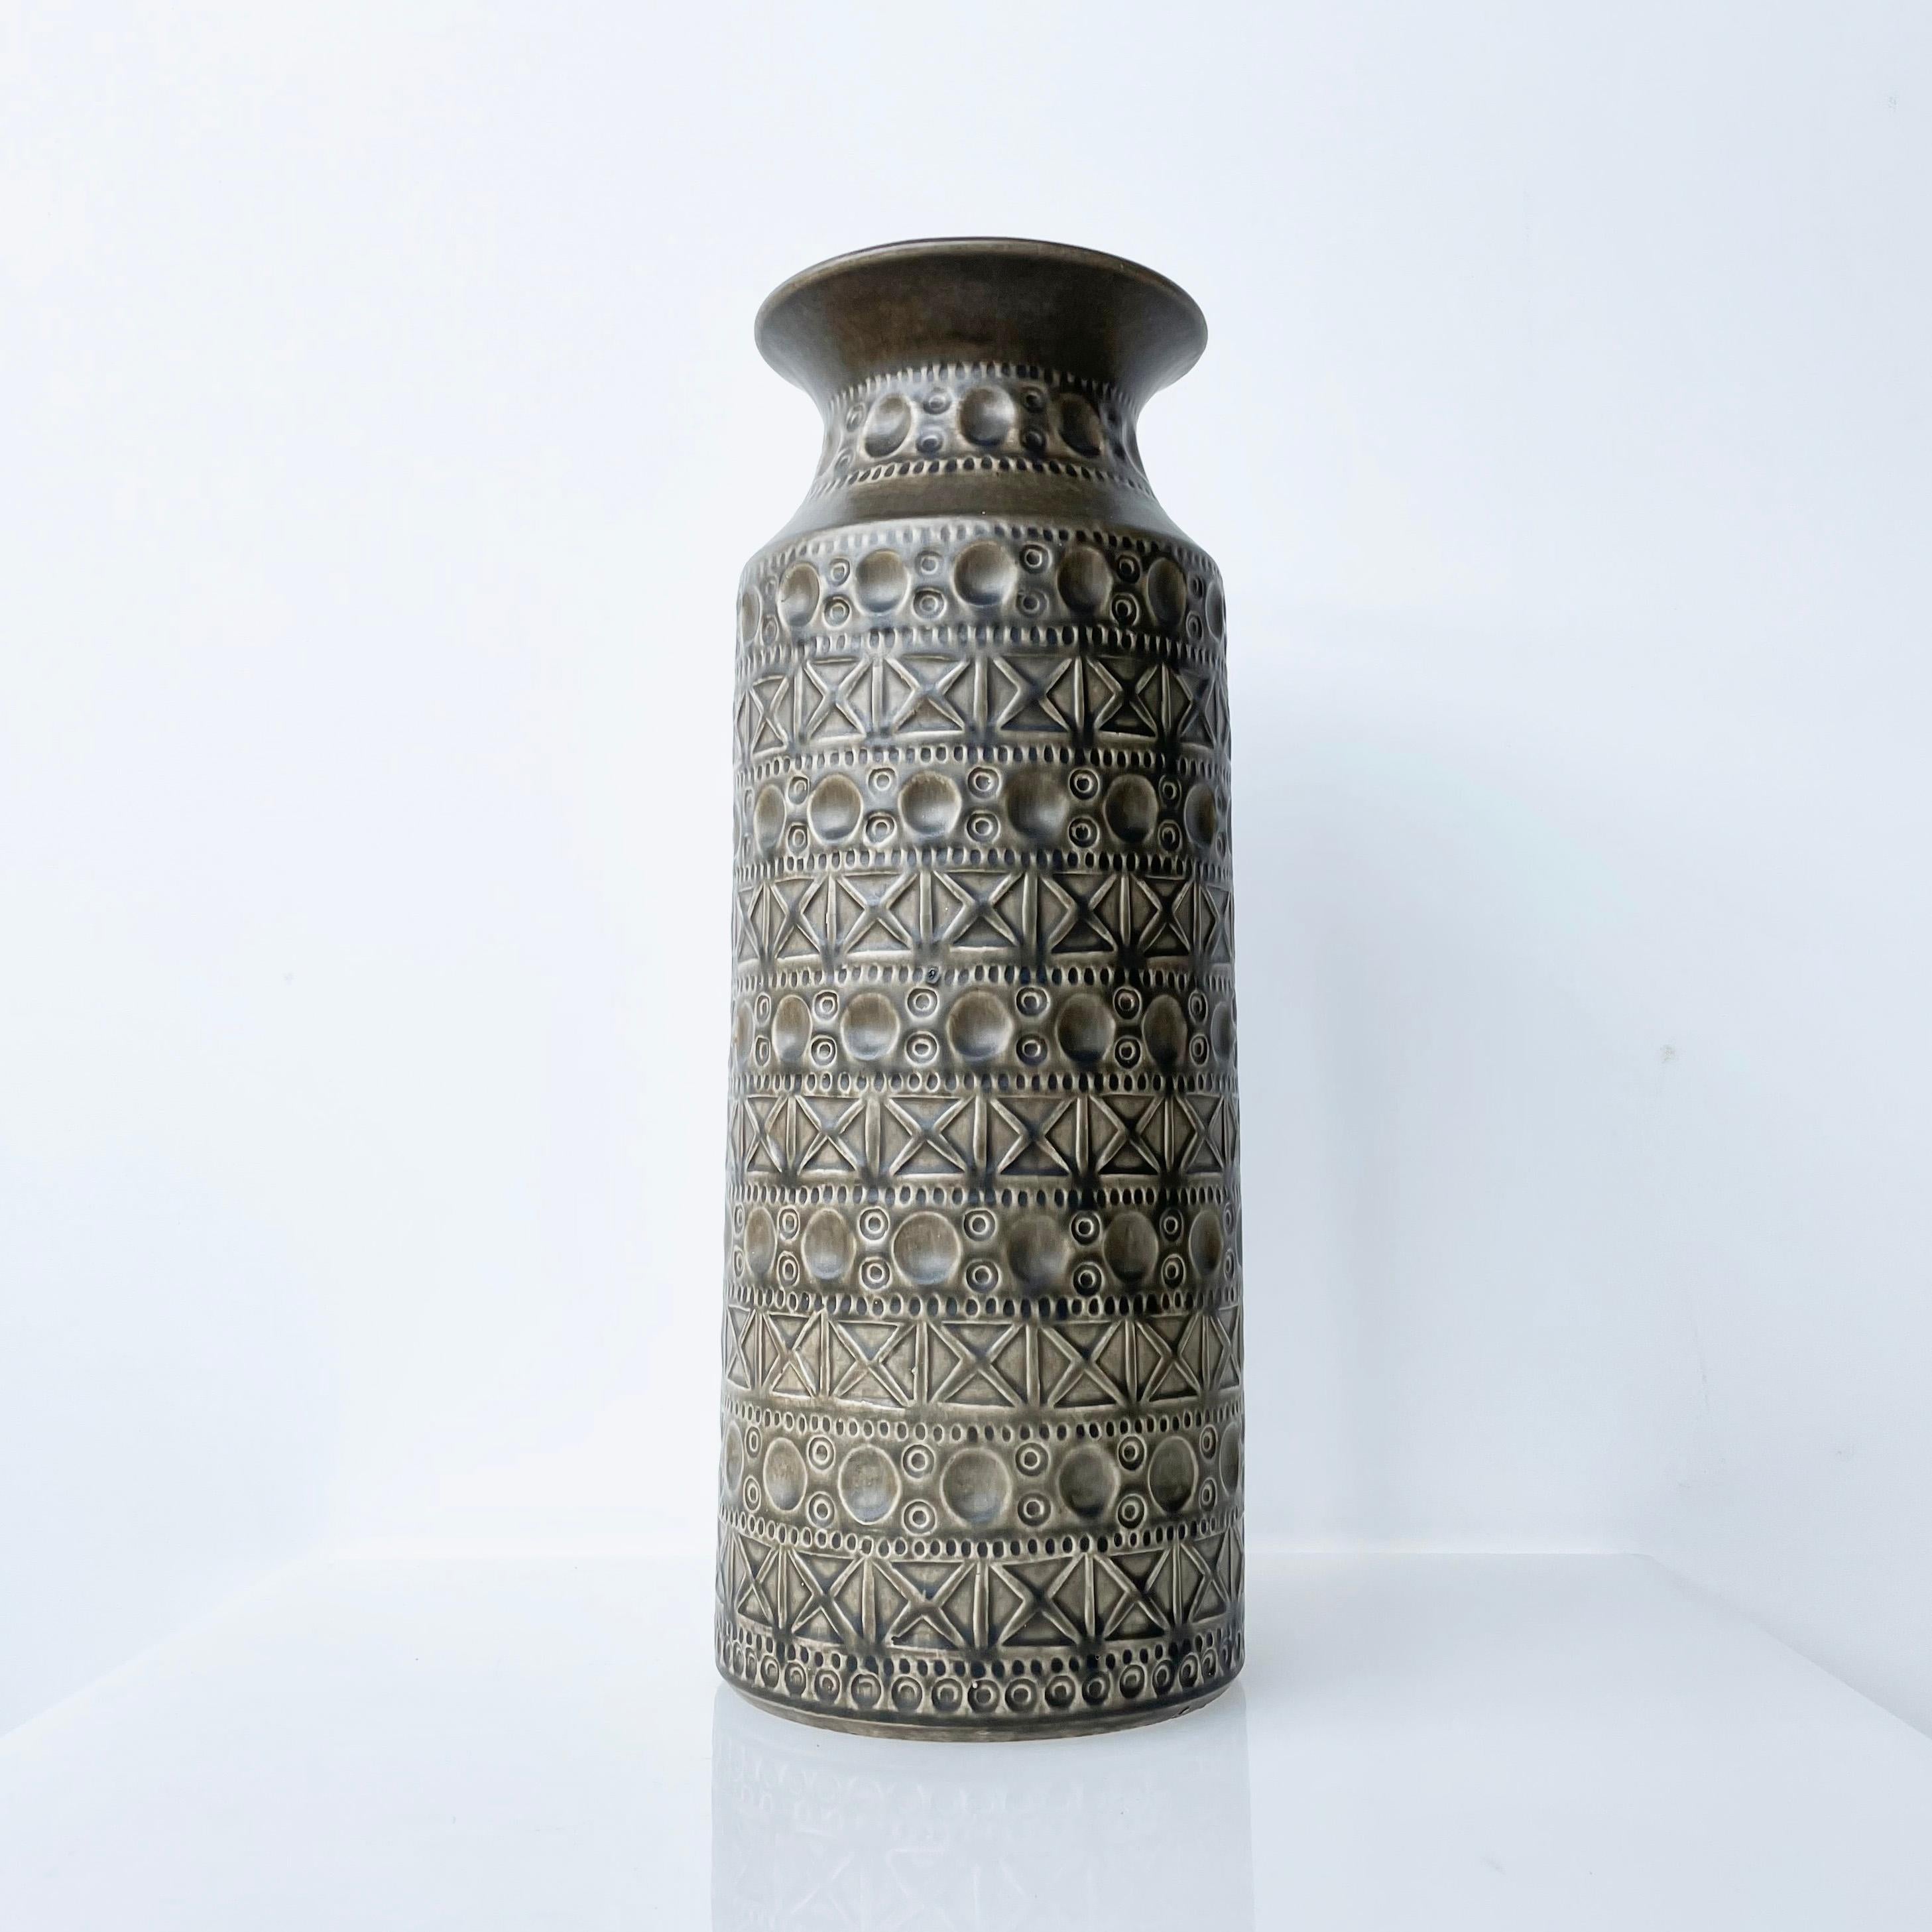 Große dekorative Vase von Bodo Mans, hergestellt von Bay Keramik (W.Deutschland) Anfang bis Mitte der 1970er Jahre. Mit typischem Bodo Mans Reliefmuster und mausgrauer Glasur. Nummeriert auf dem Sockel: 607-40 (40 cm hoch).